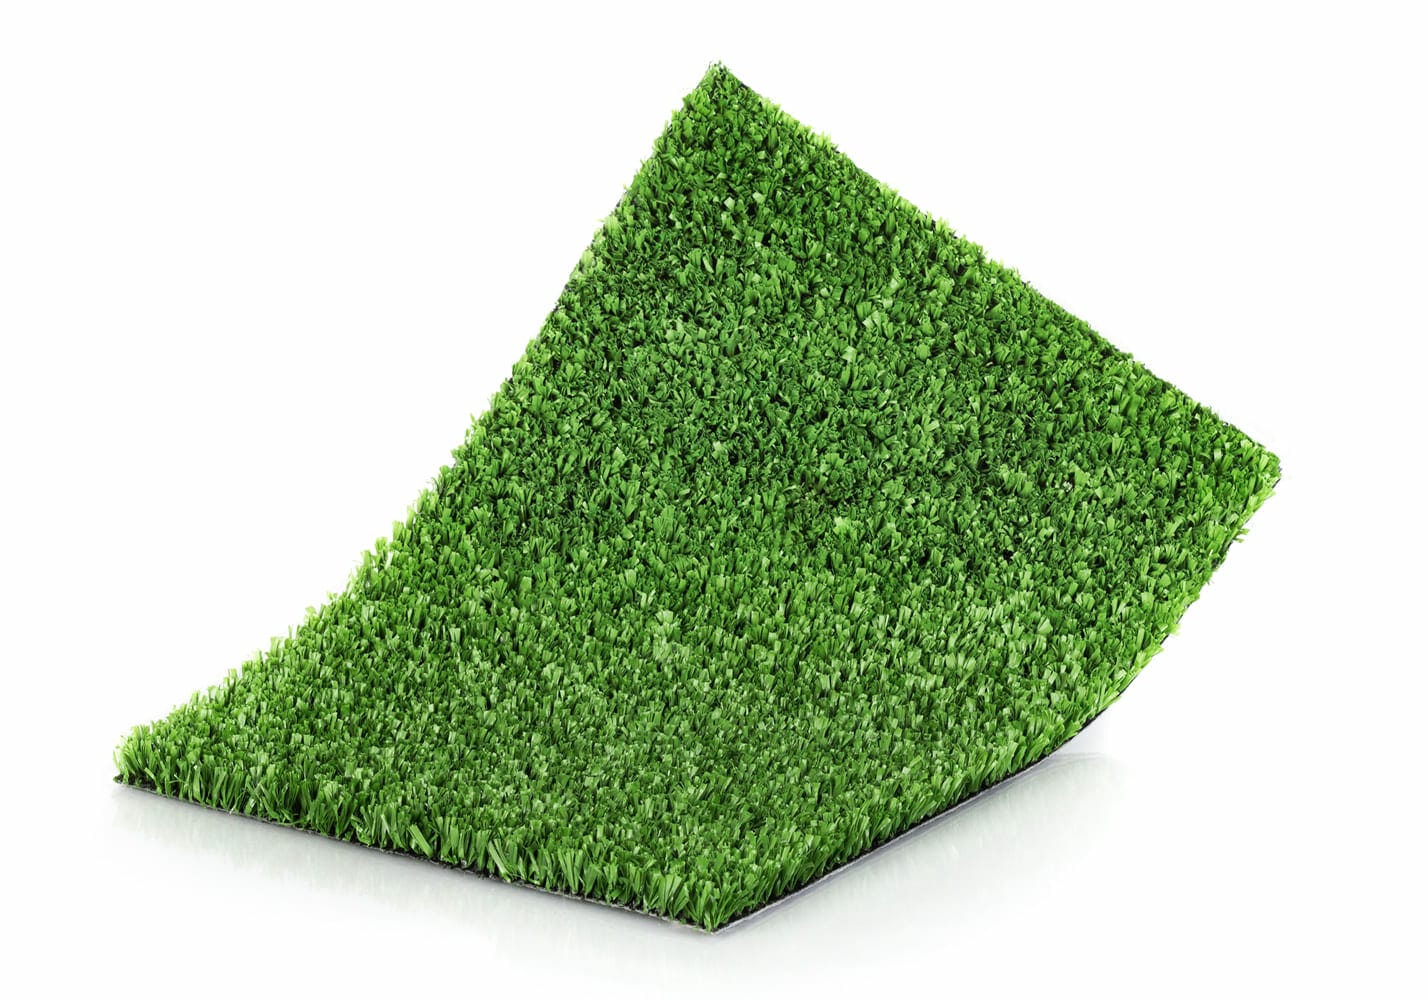 Césped artificial Proturf green, ideal para pádel.